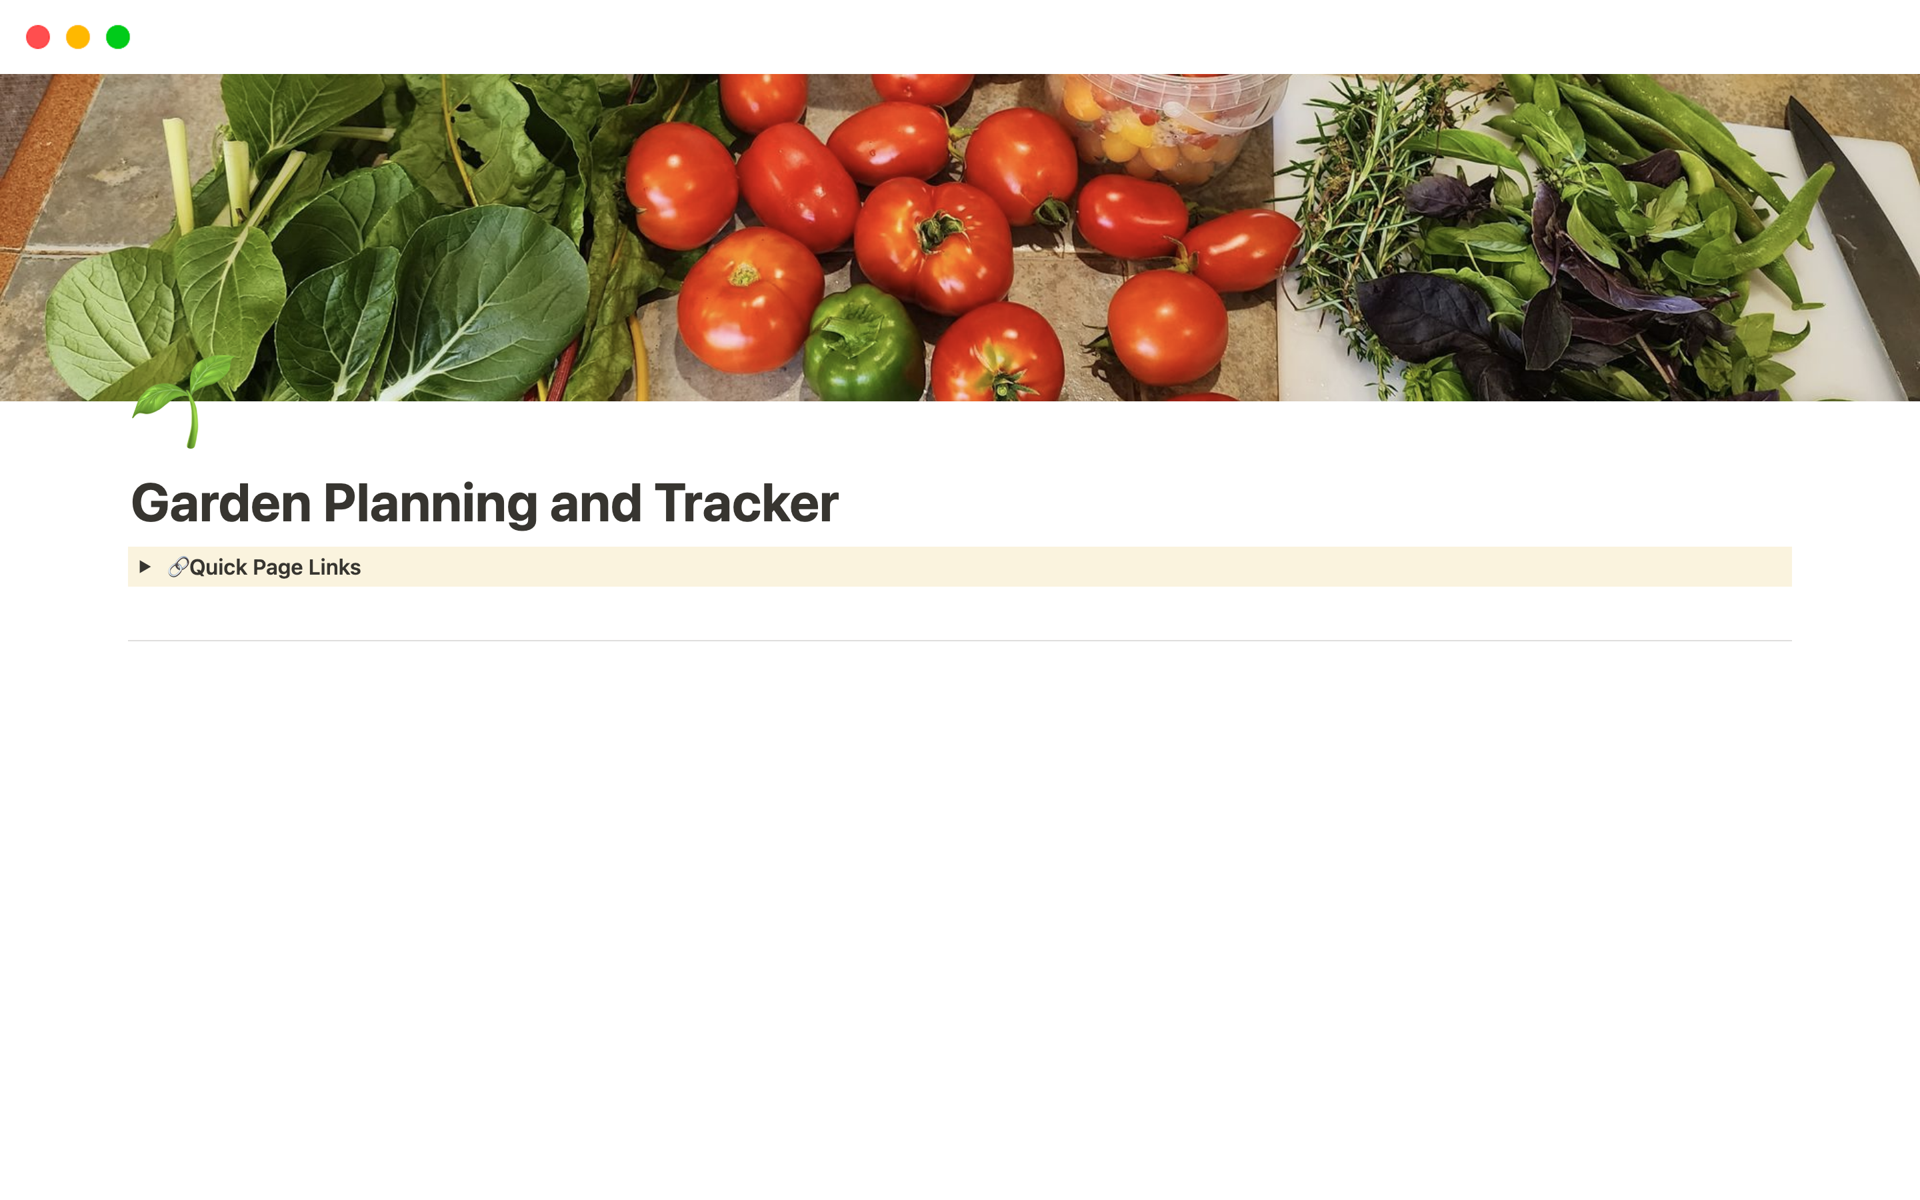 Vista previa de una plantilla para Garden Planning and Tracker